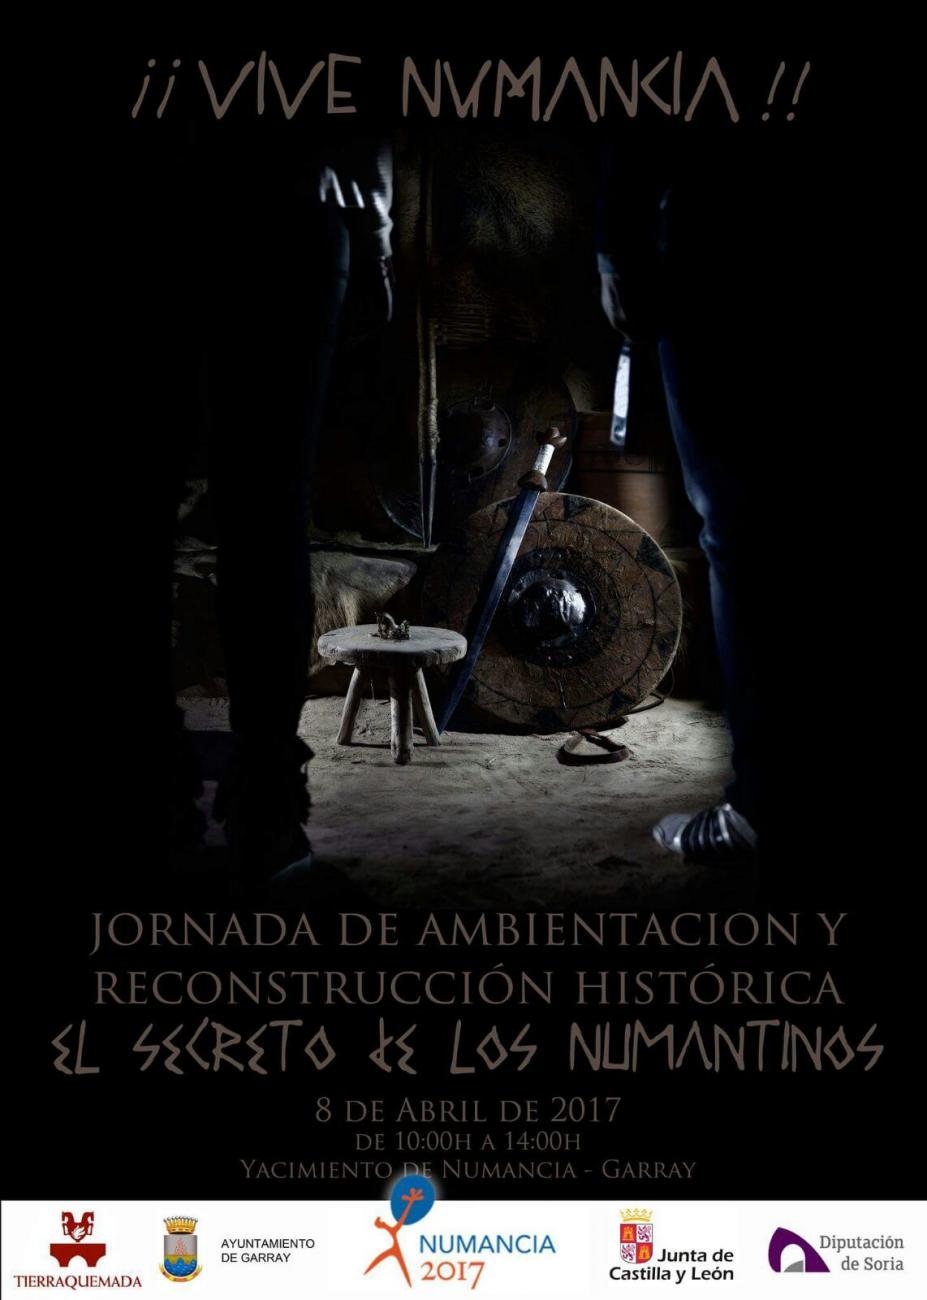 VIVE NUMANCIA. JORNADA DE RECONSTRUCCION HISTORICA Y AMBIENTACION